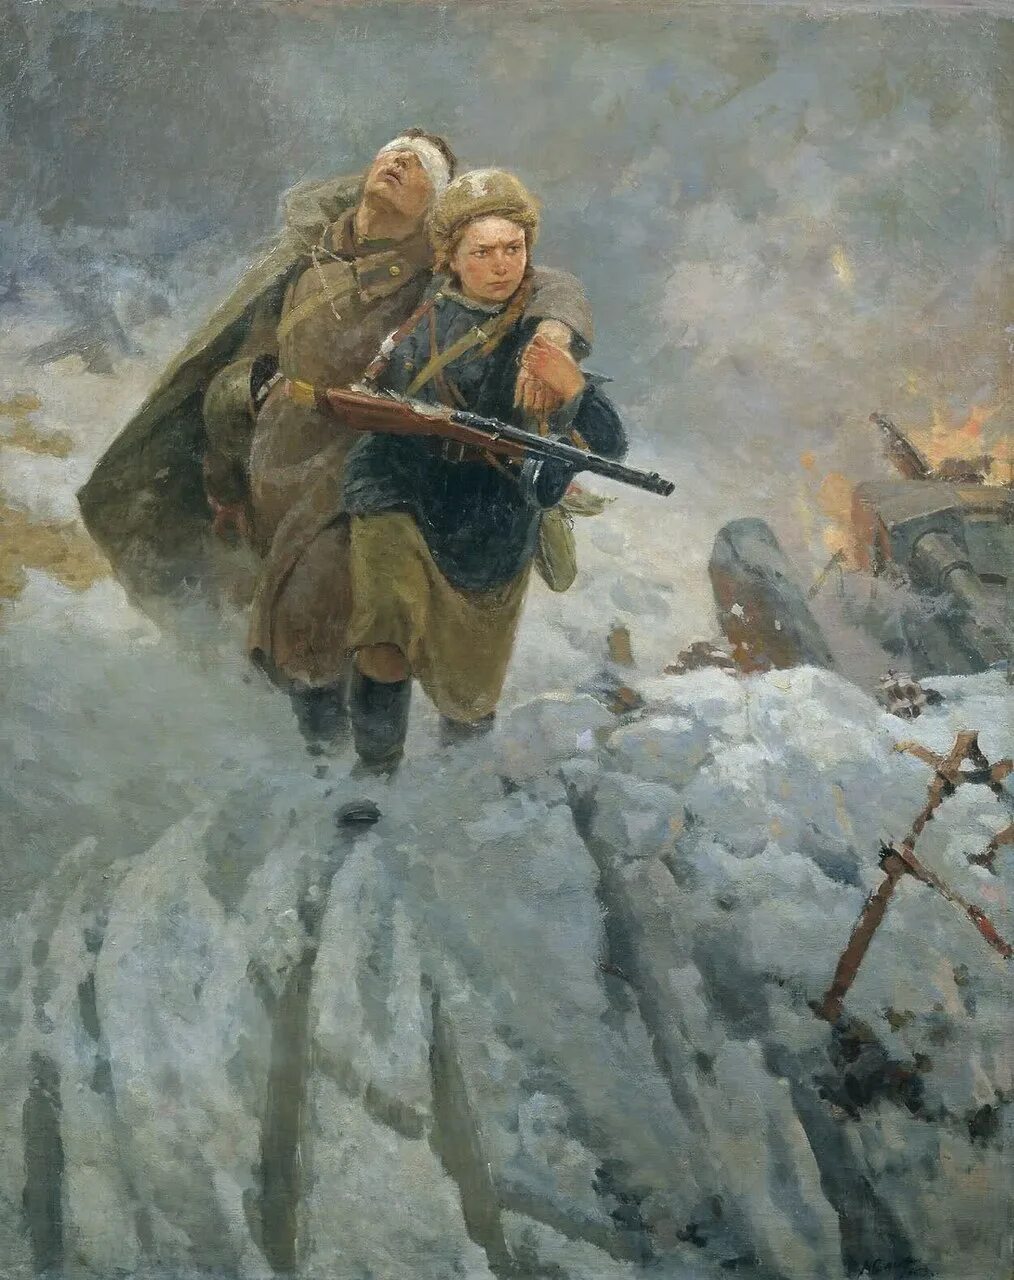 Картина художника на тему войны